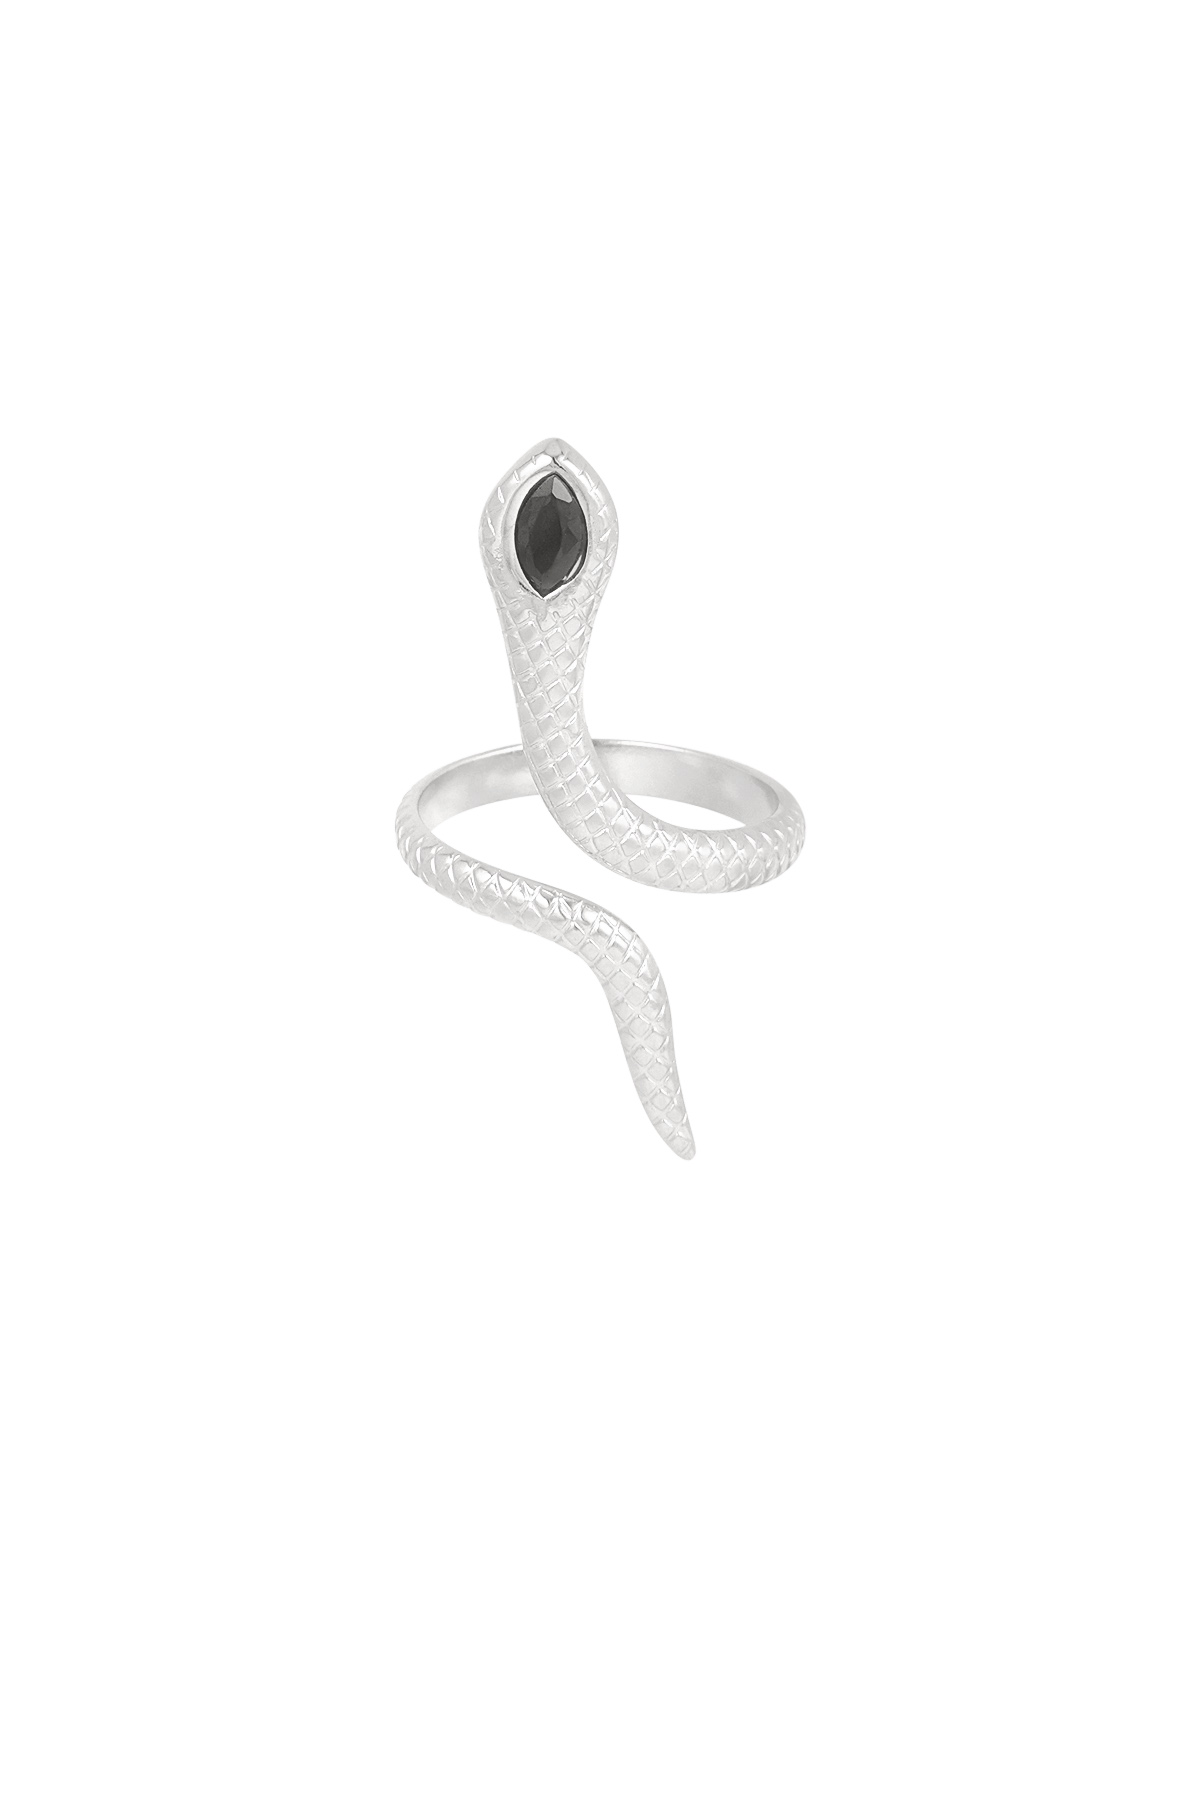 Anello serpente nero - argento  h5 